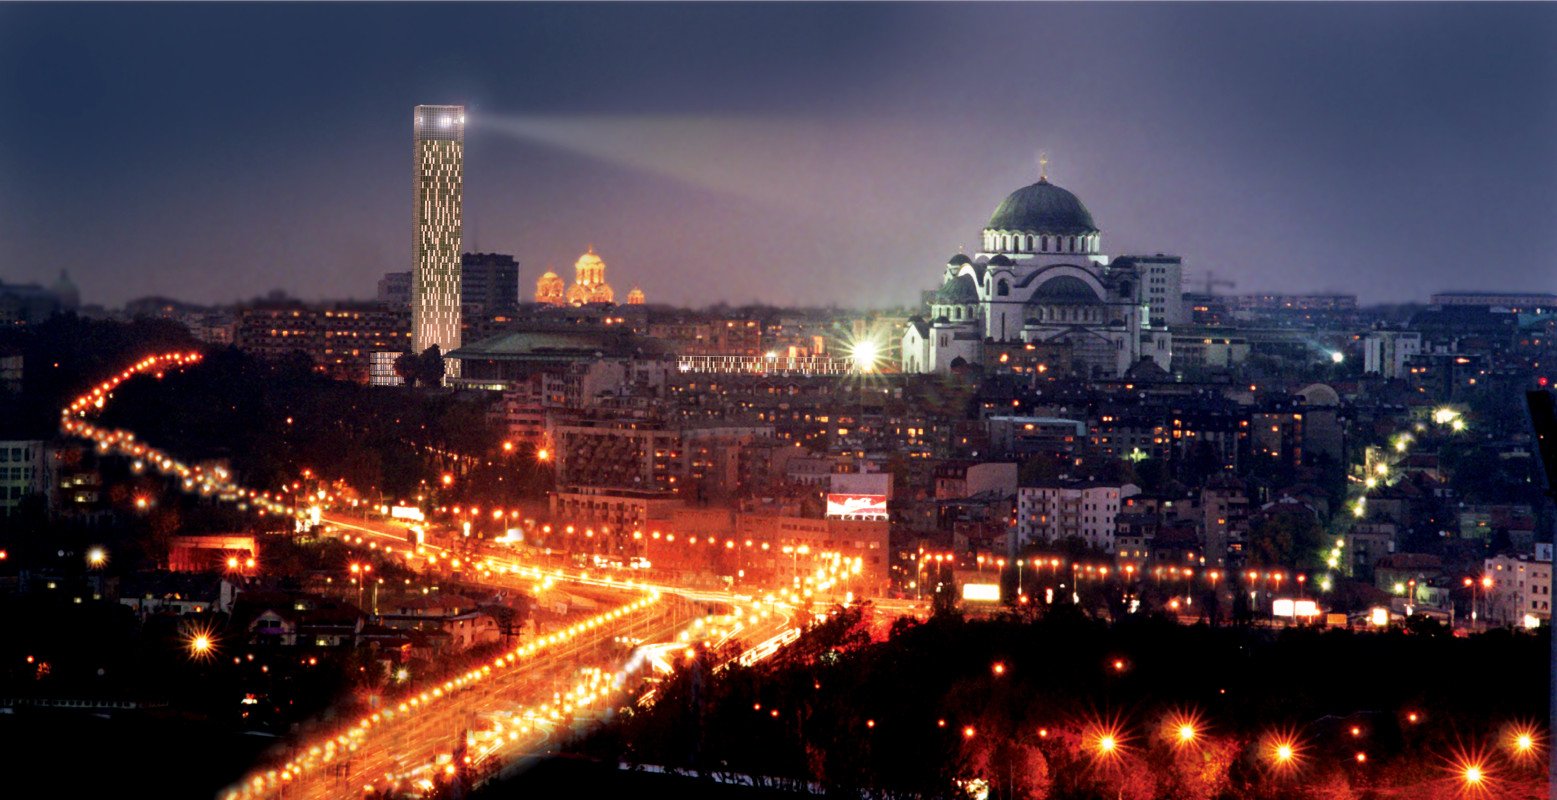 Белград город какой страны